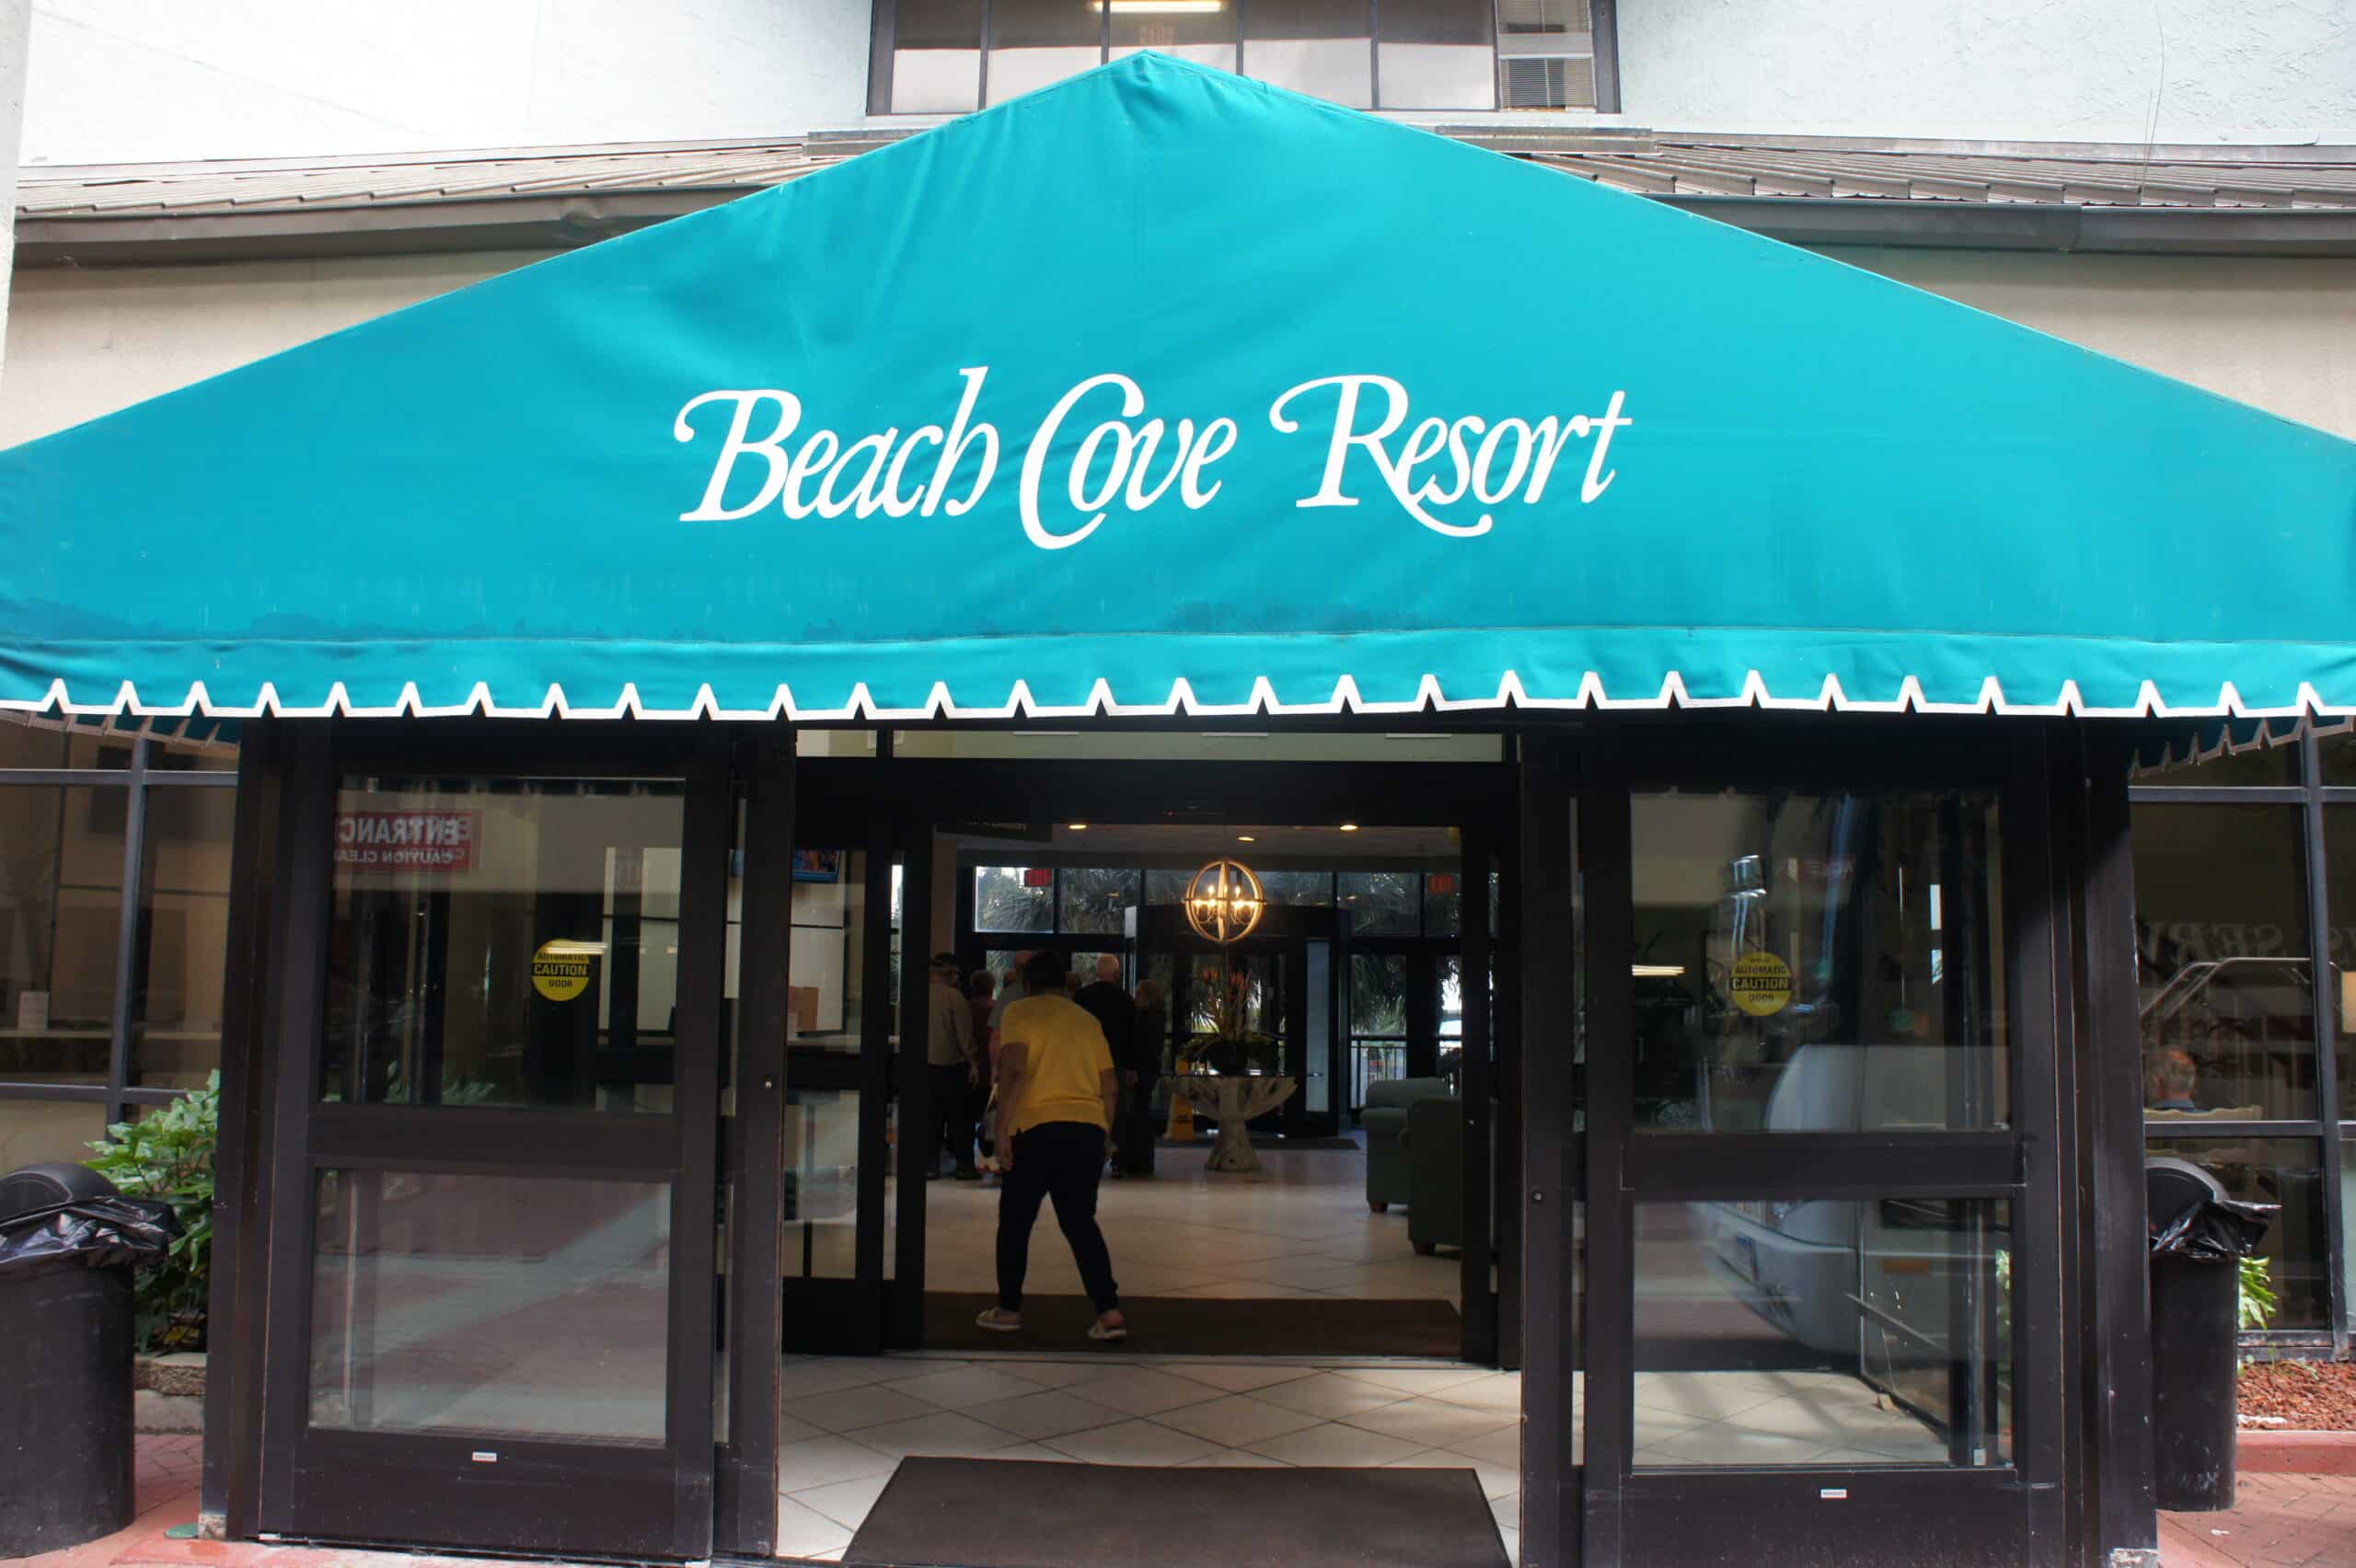 Beach Cove Resort